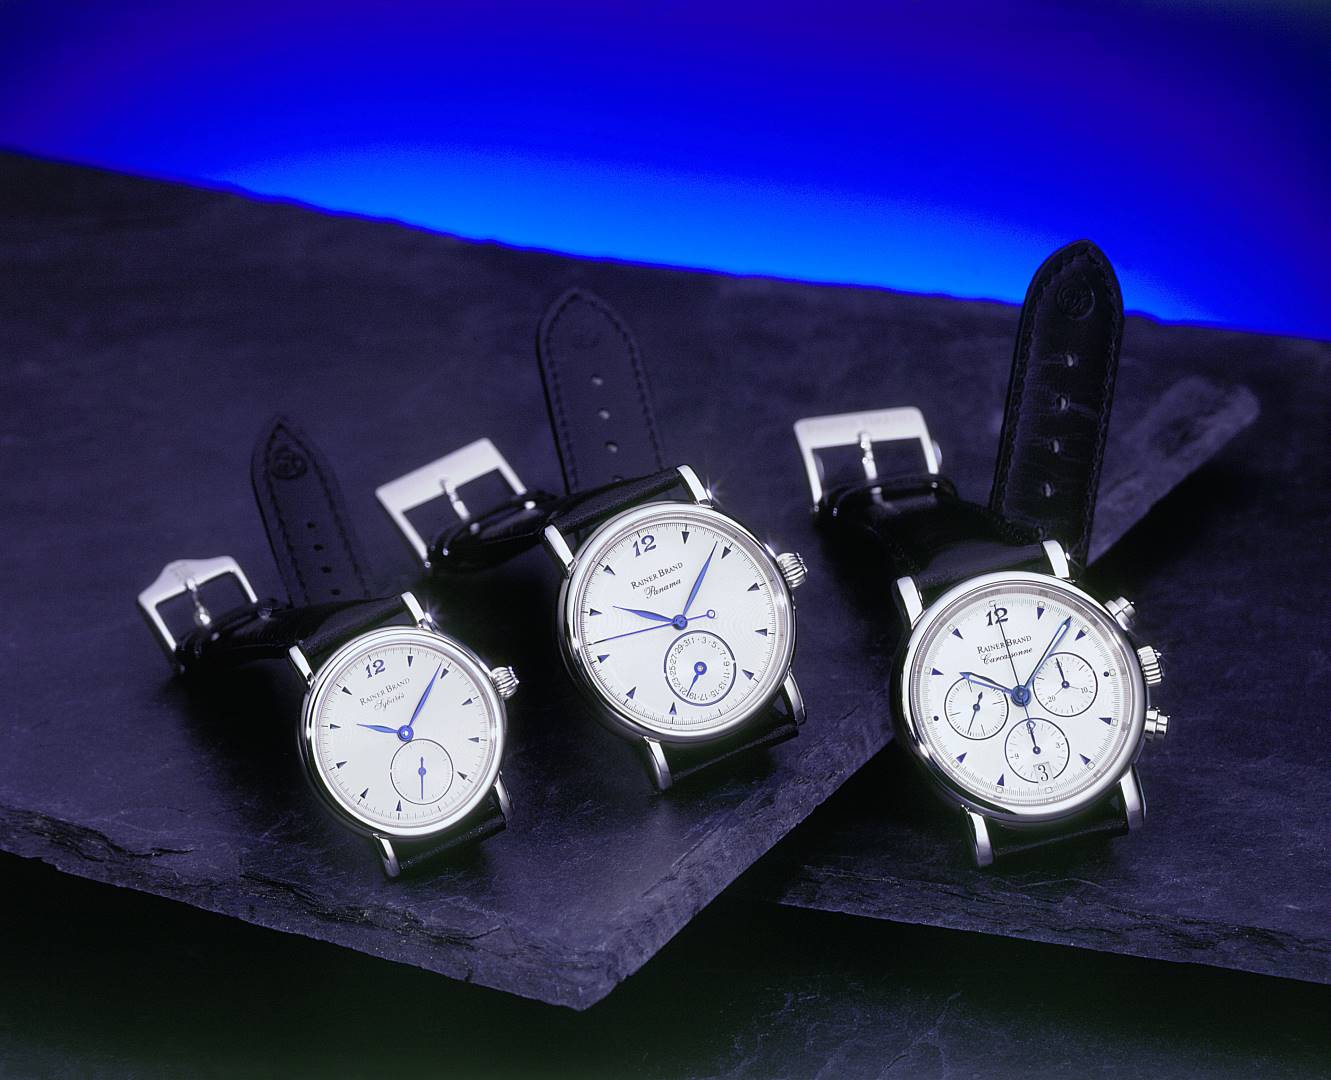 Retrospective • Rainer Brand - Produktion hochwertiger mechanischer Uhren